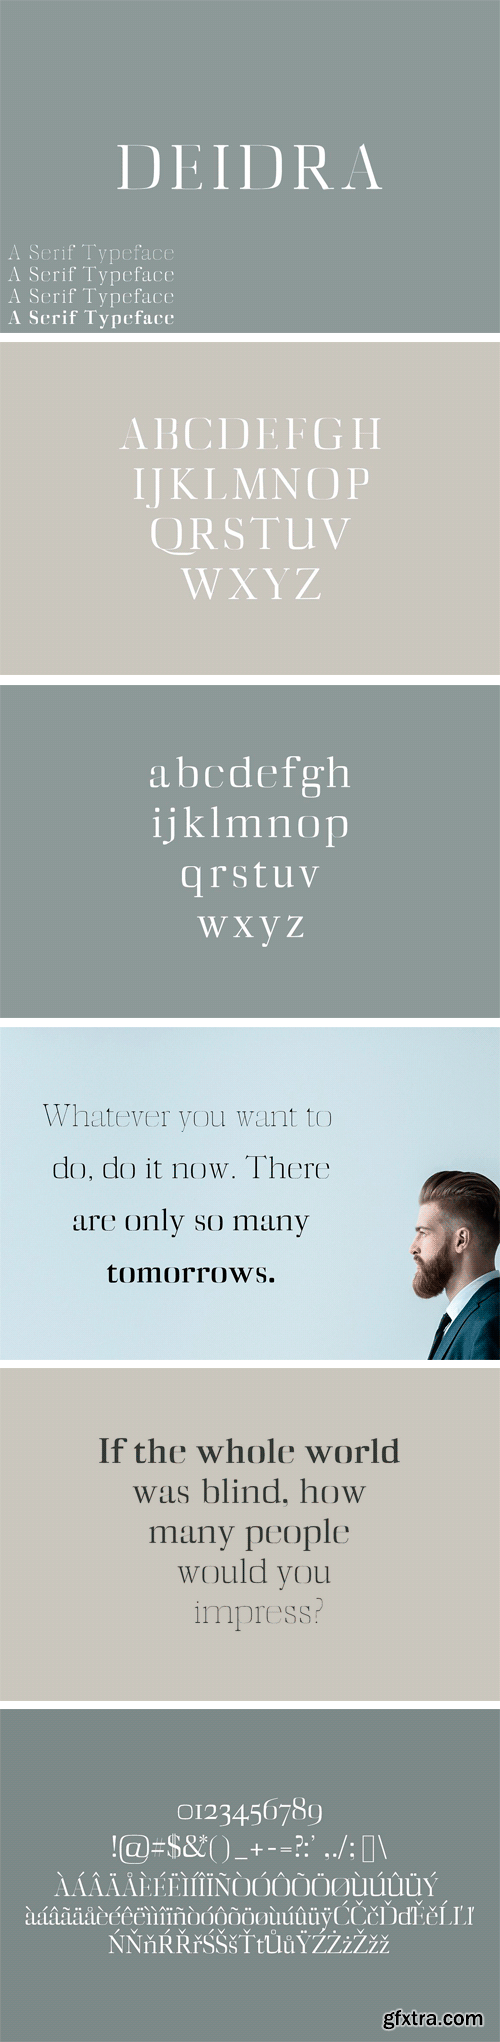 CM - Diedra Serif Typeface 1757769